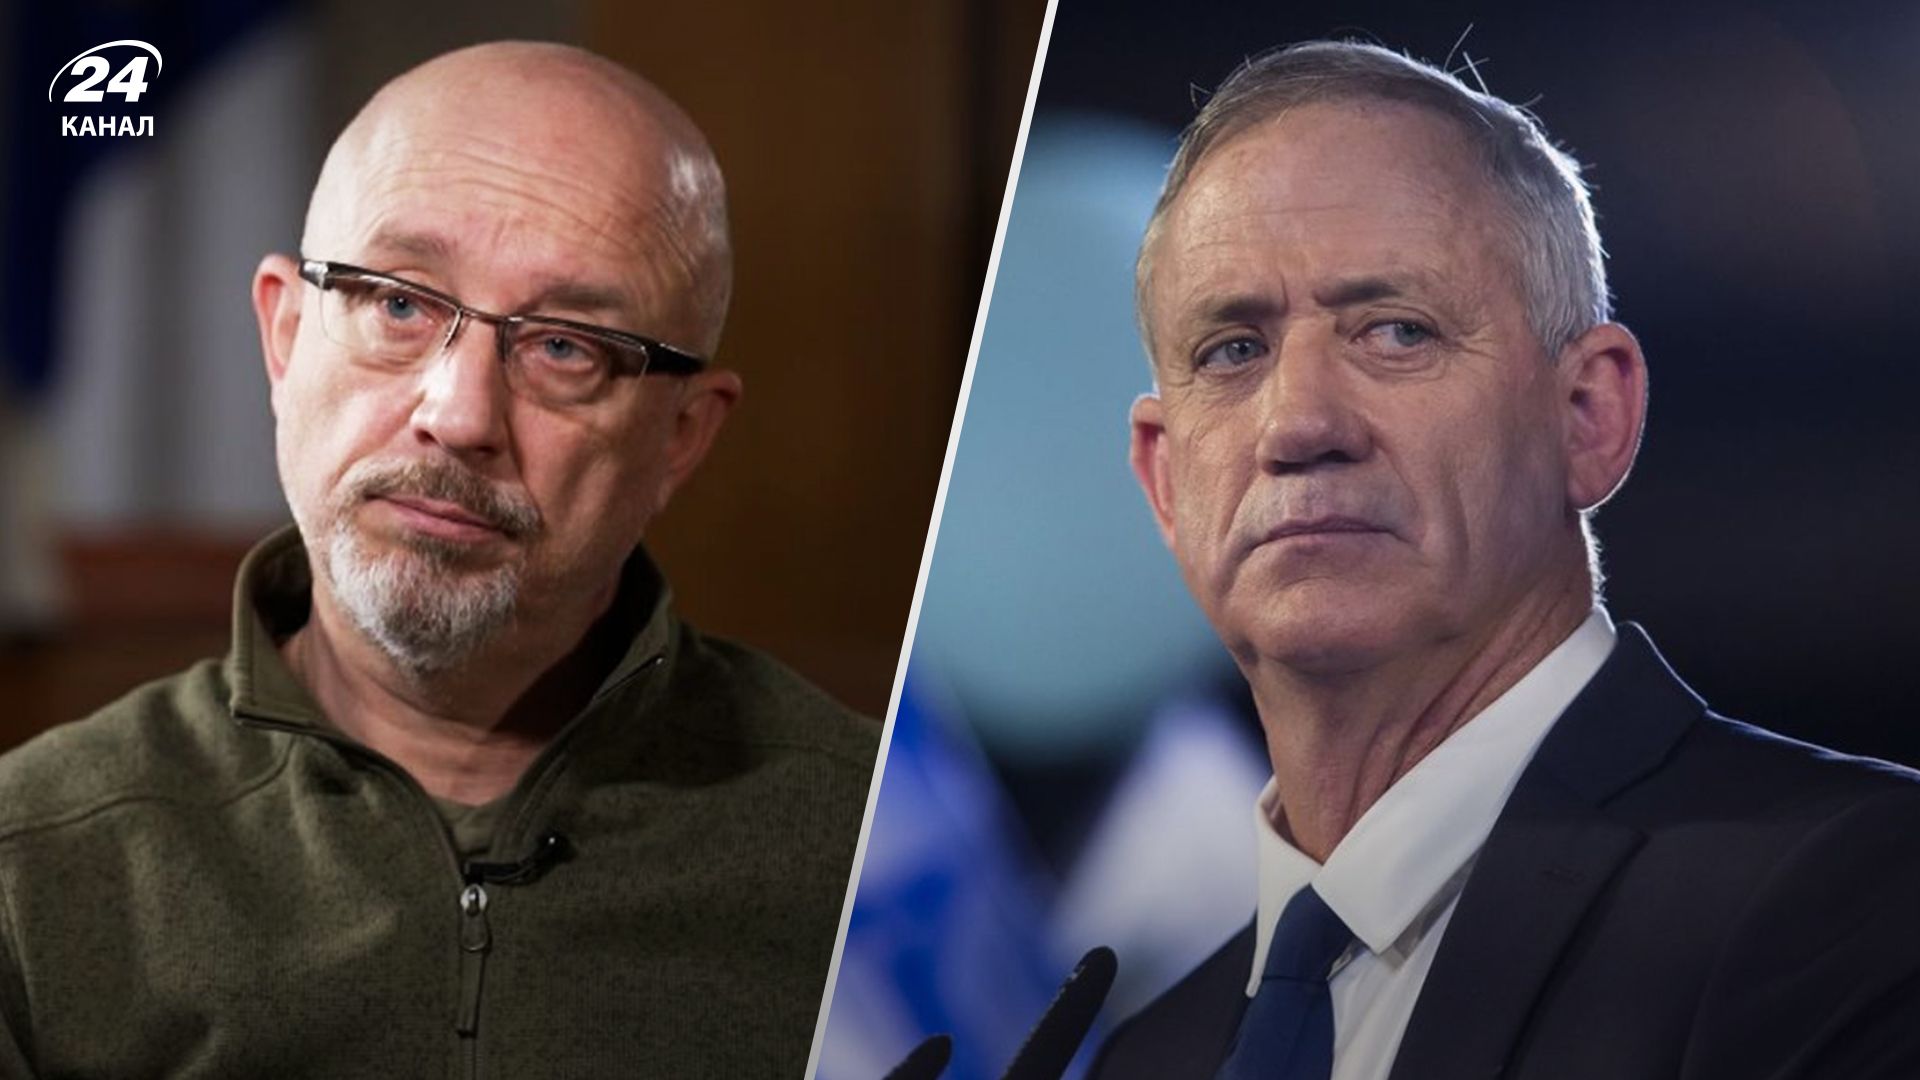 Резников имел телефонный разговор с министром обороны Израиля